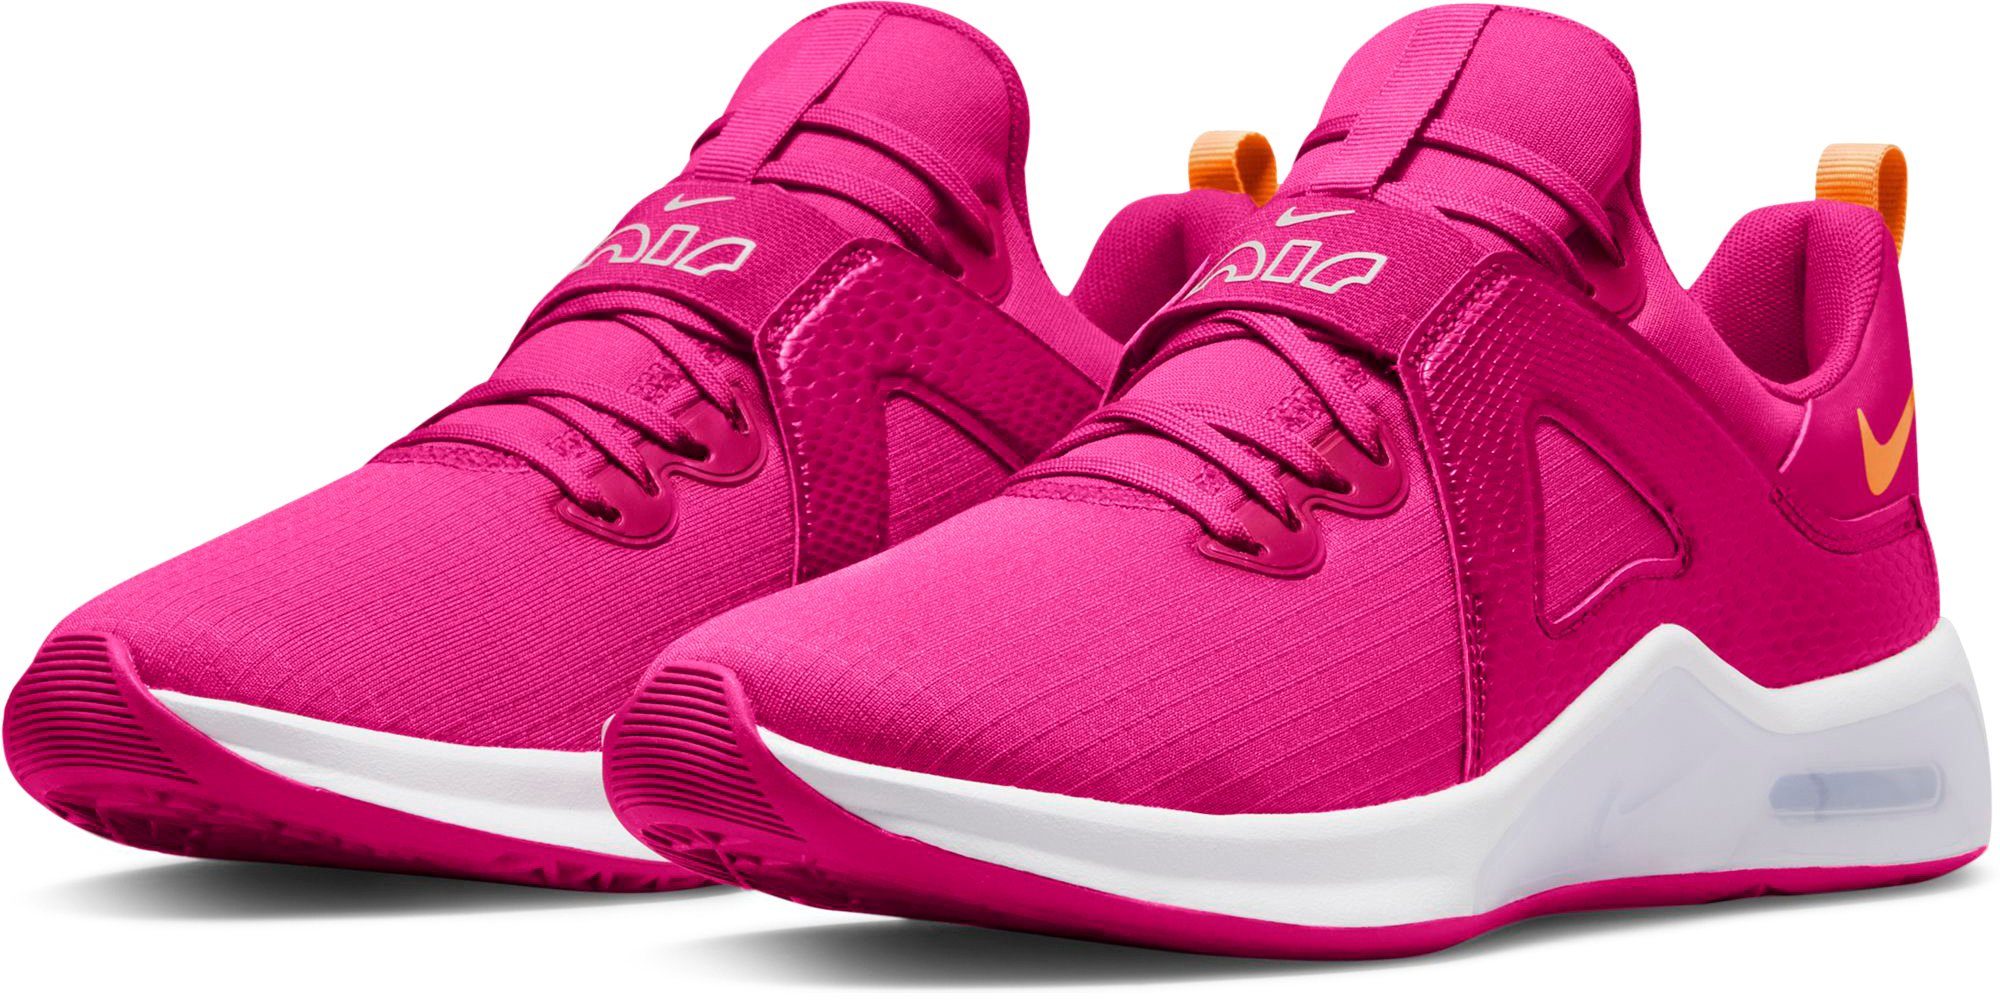 Nike Sportschuhe Damen online kaufen | OTTO